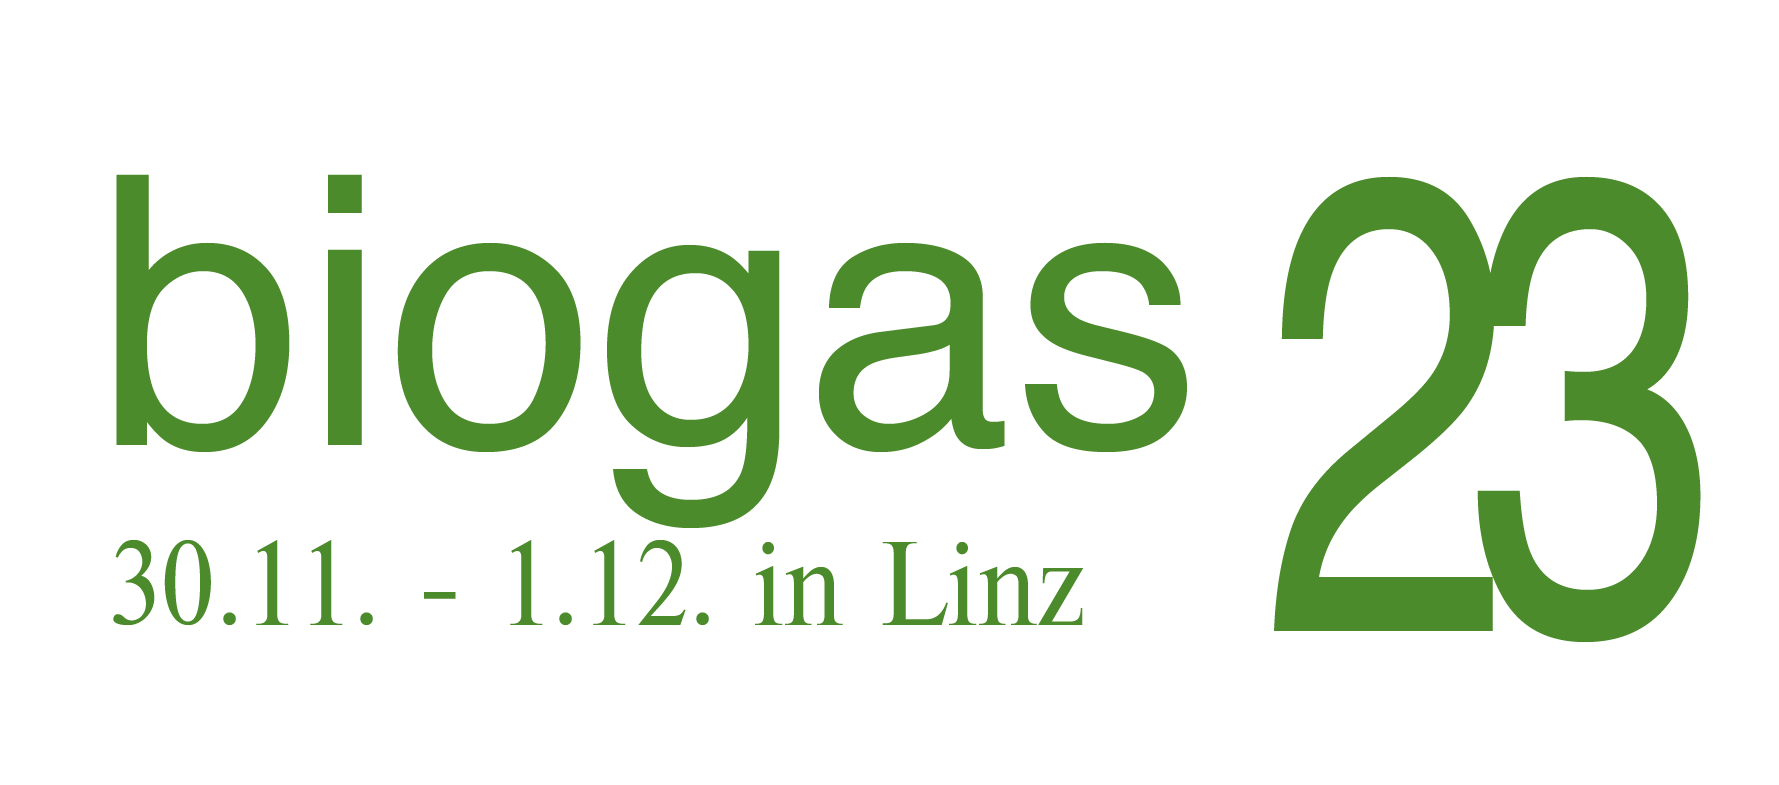 biogas23 w Linz